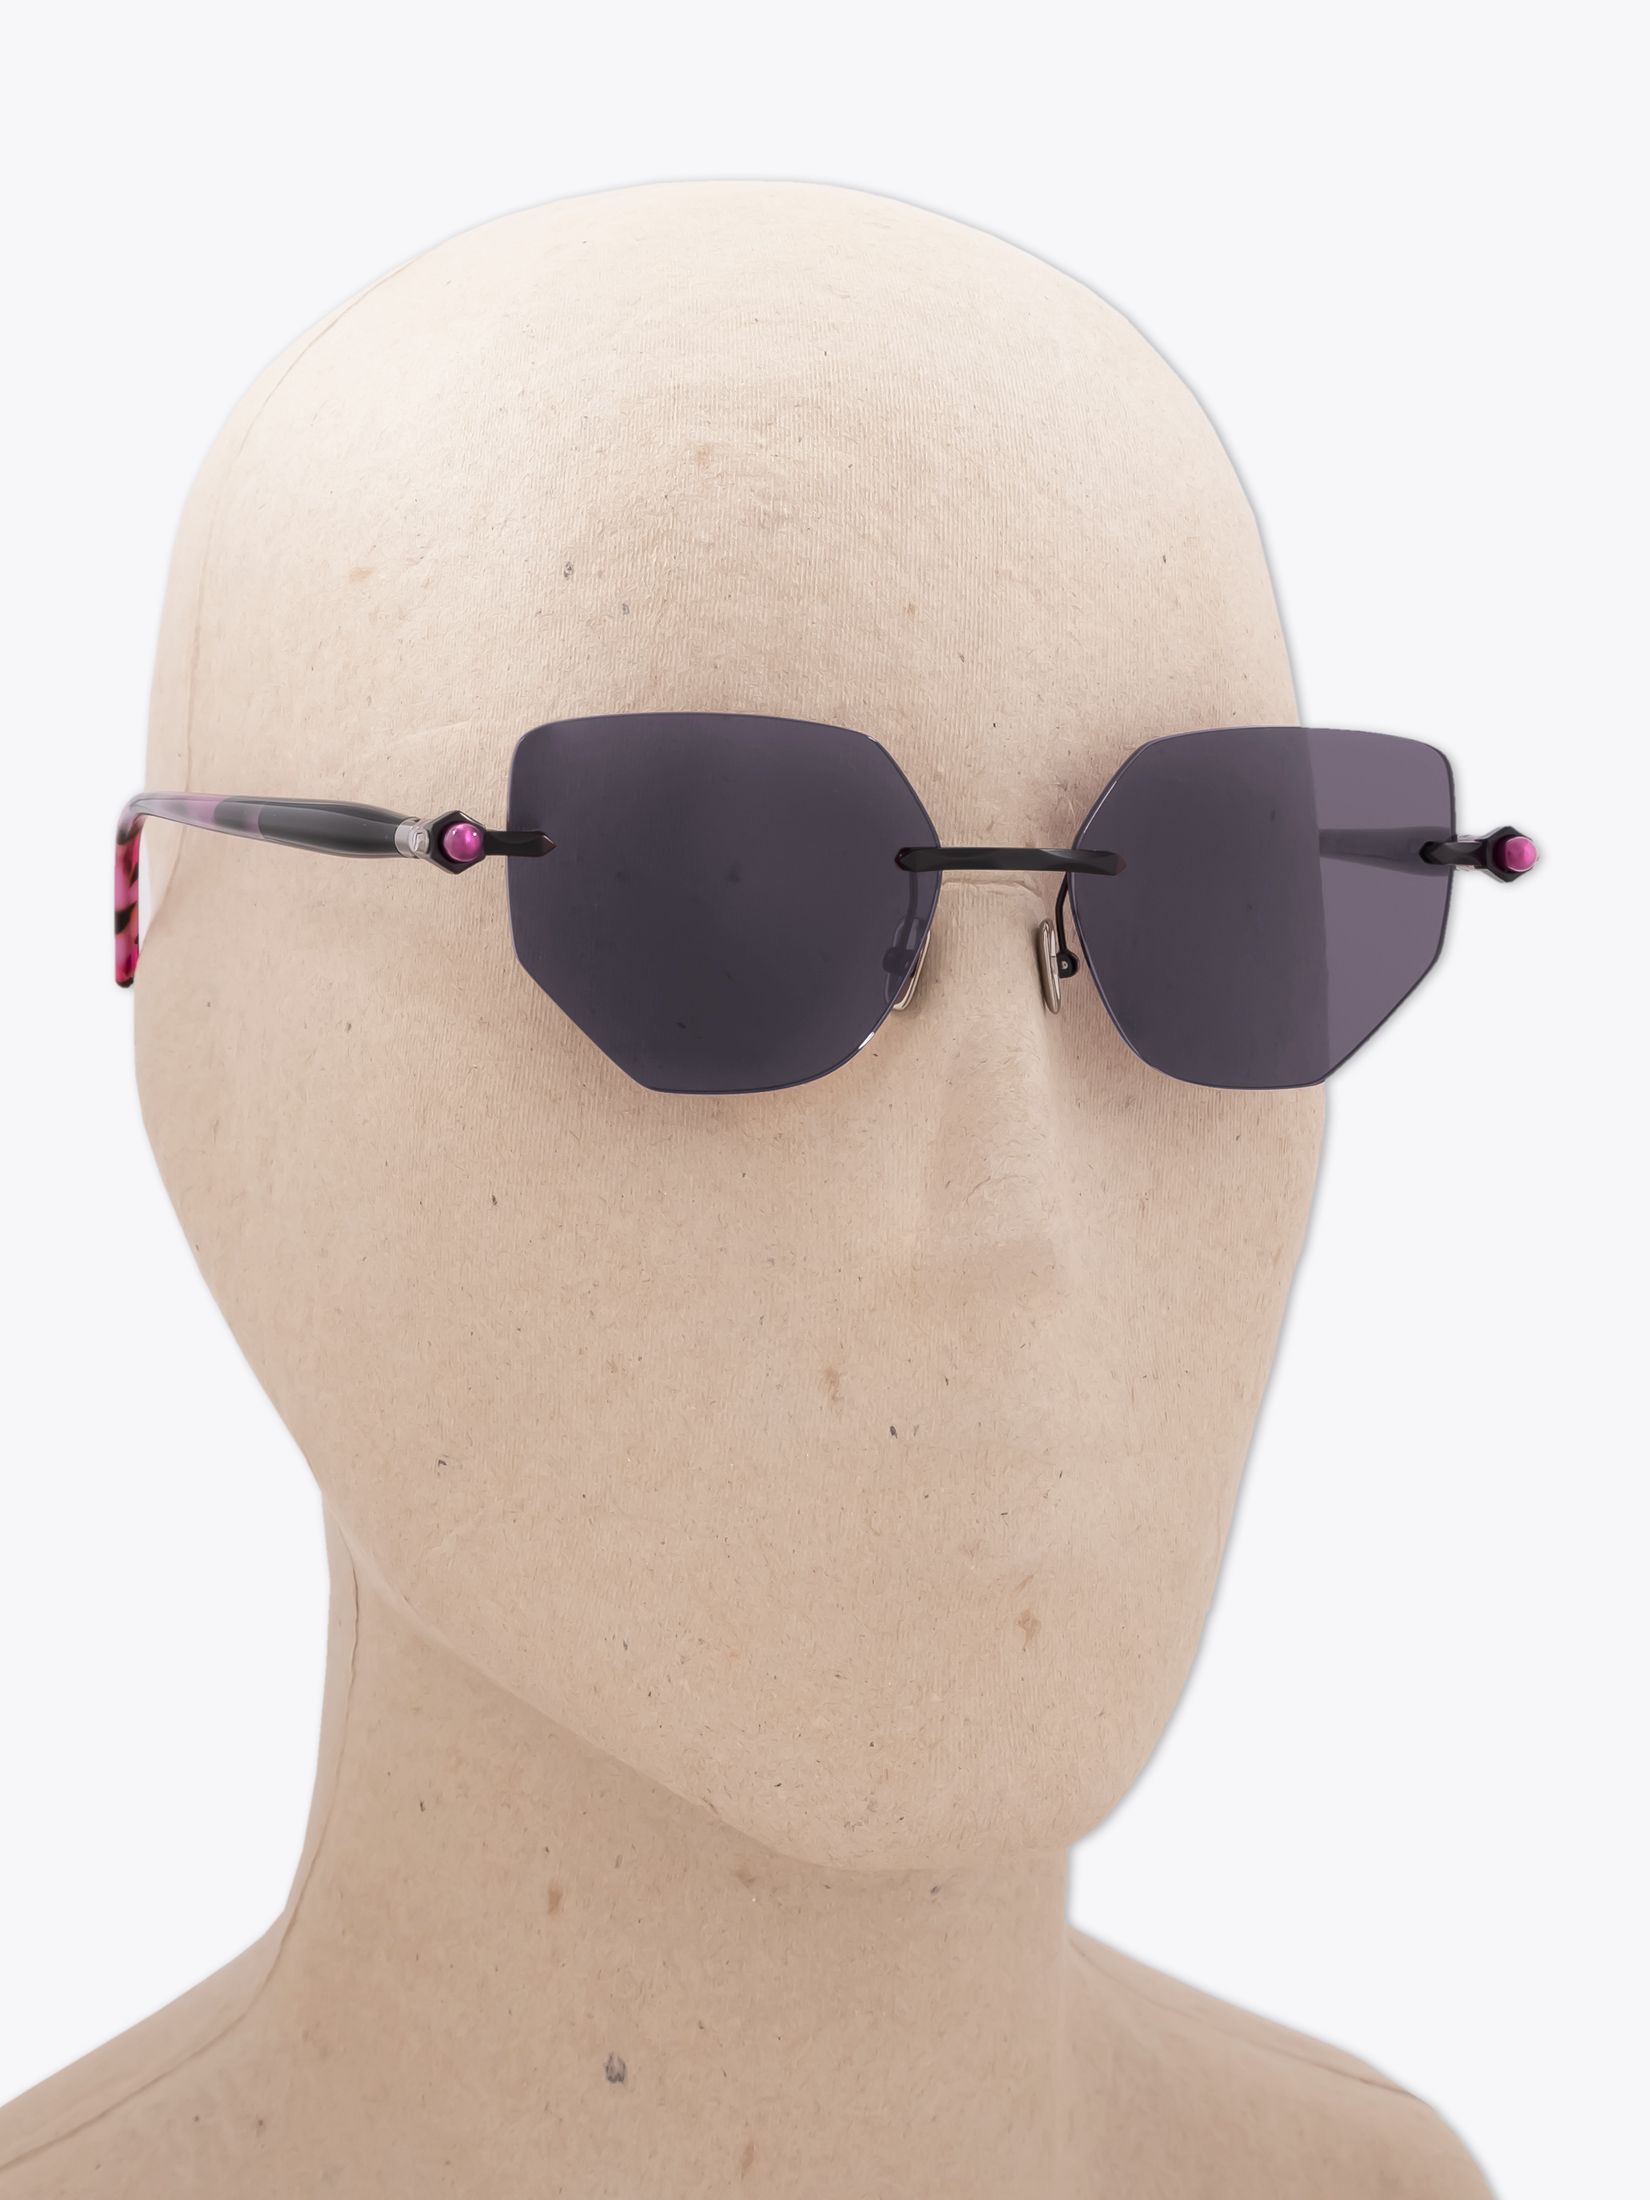 Kuboraum Sunglasses - Mask X12 Pink/Light Pink - E35 Shop